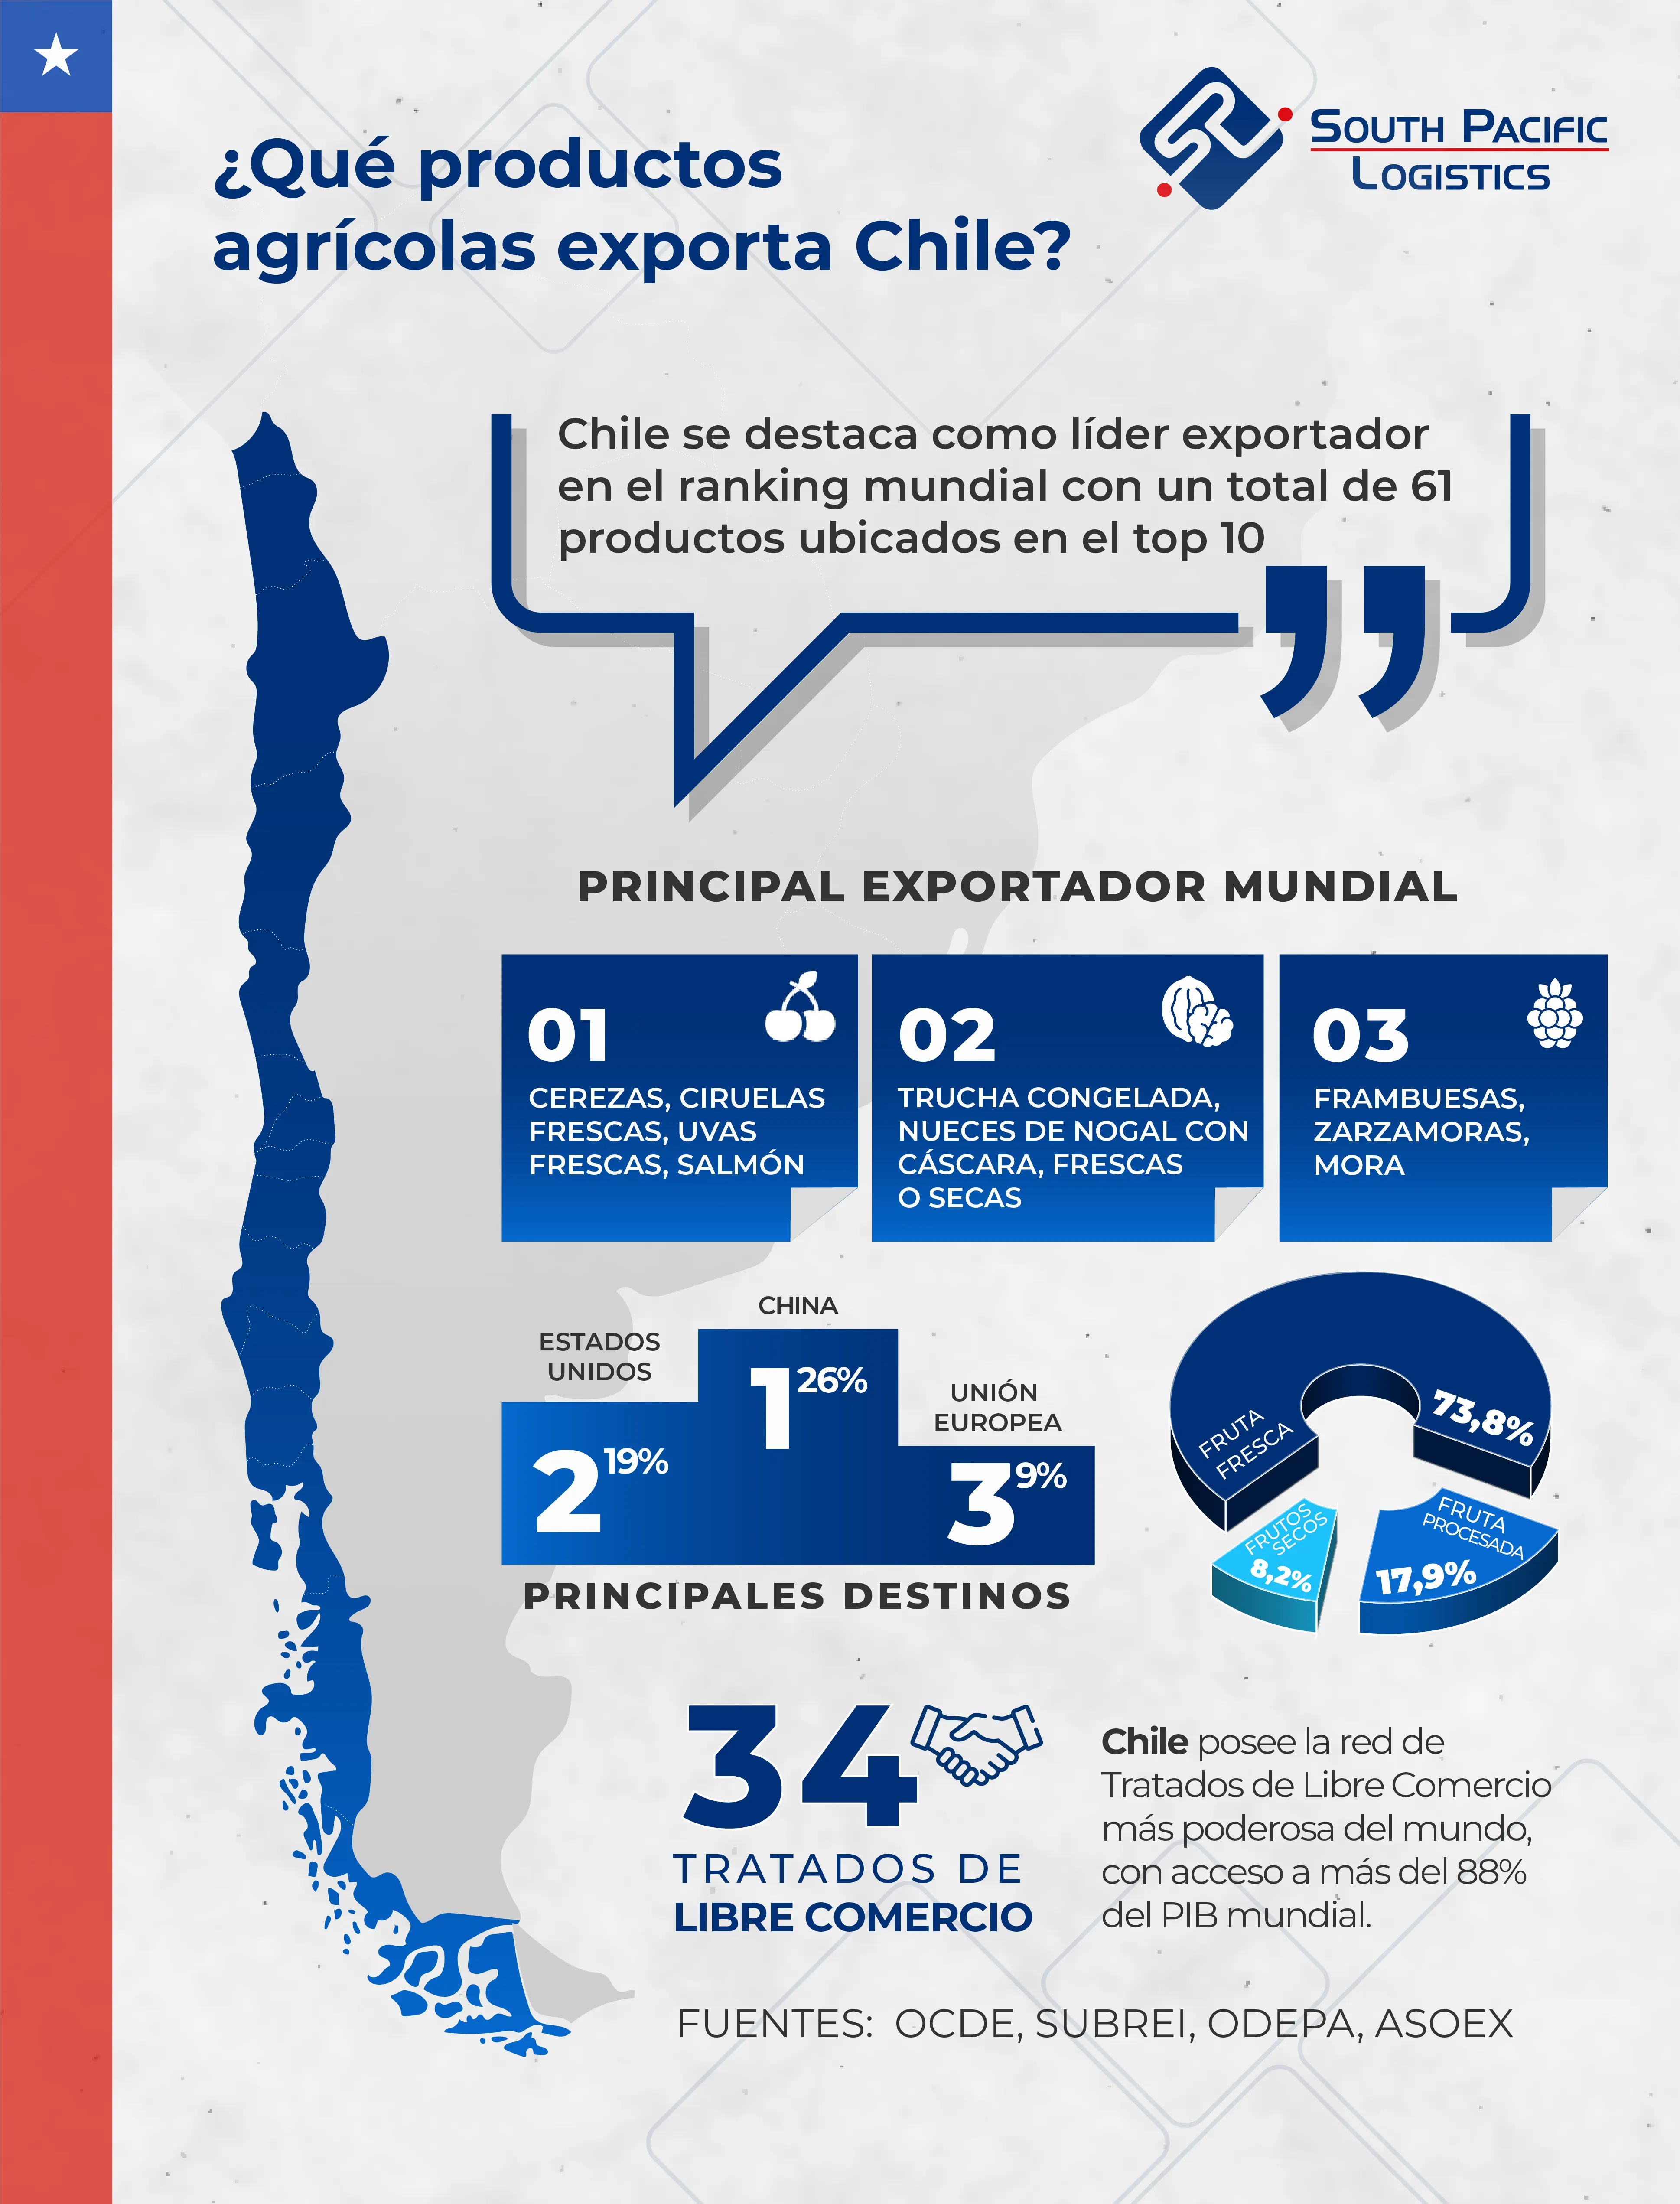 Infografia sobre los productos agricolas que exporta Chile